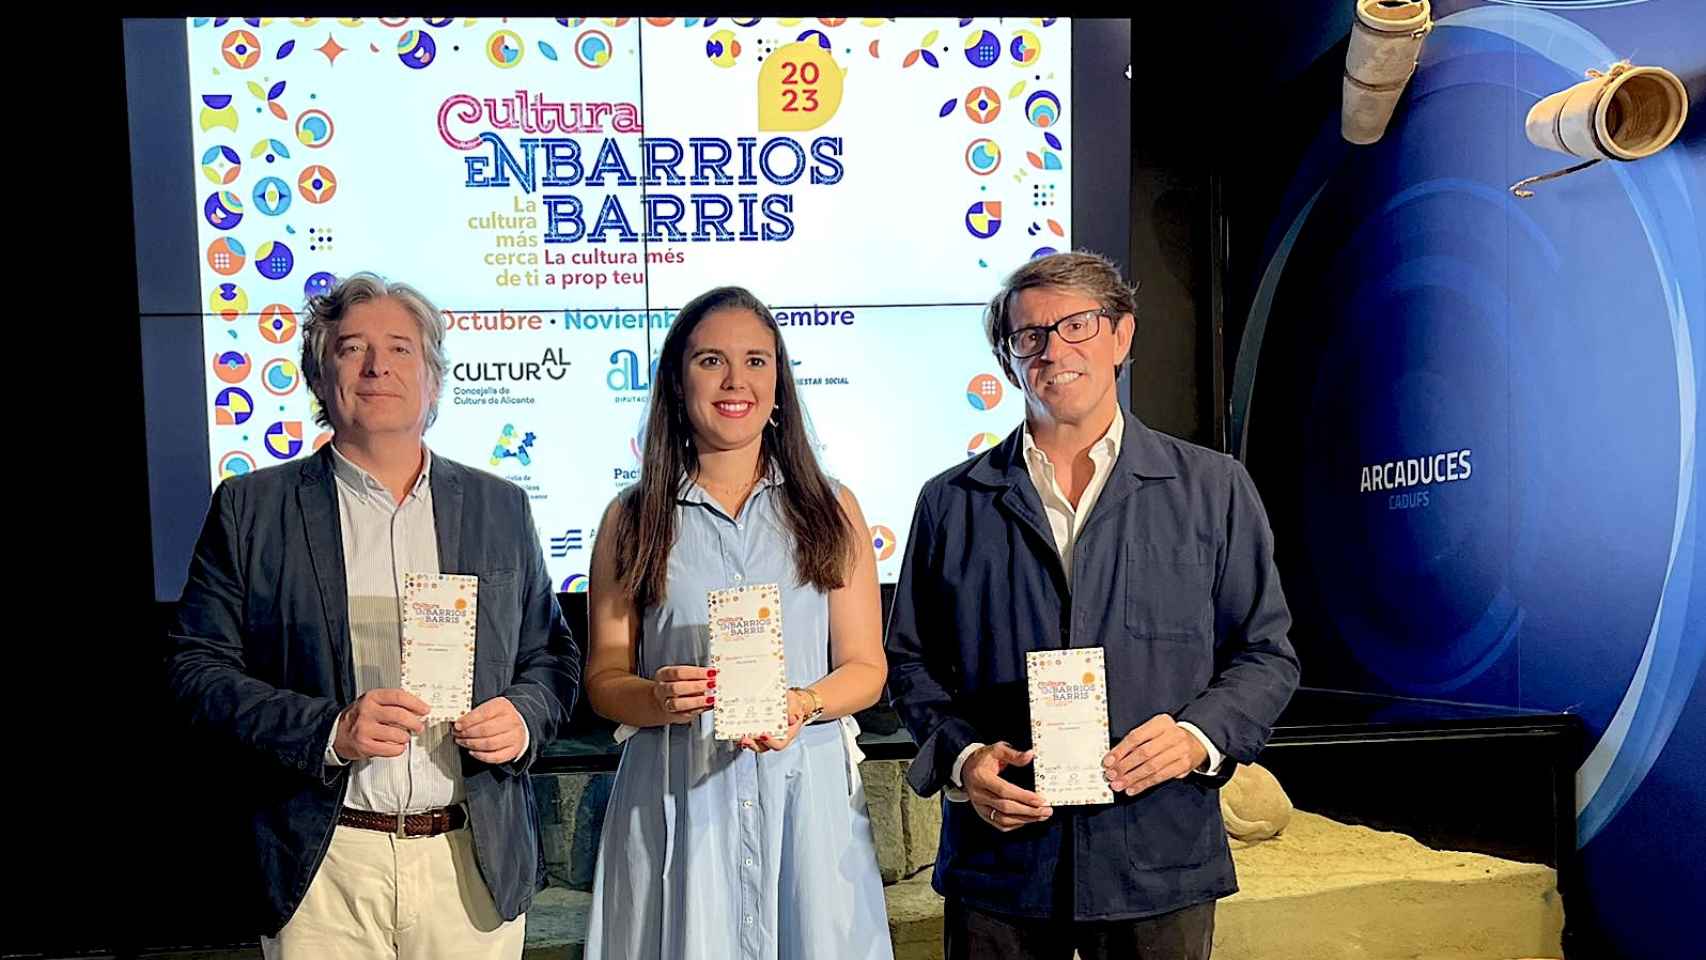 Martín Sanz, Nayma Beldjilali y Juan de Dios Navarro en la presentación del programa Cultura en Barrios.